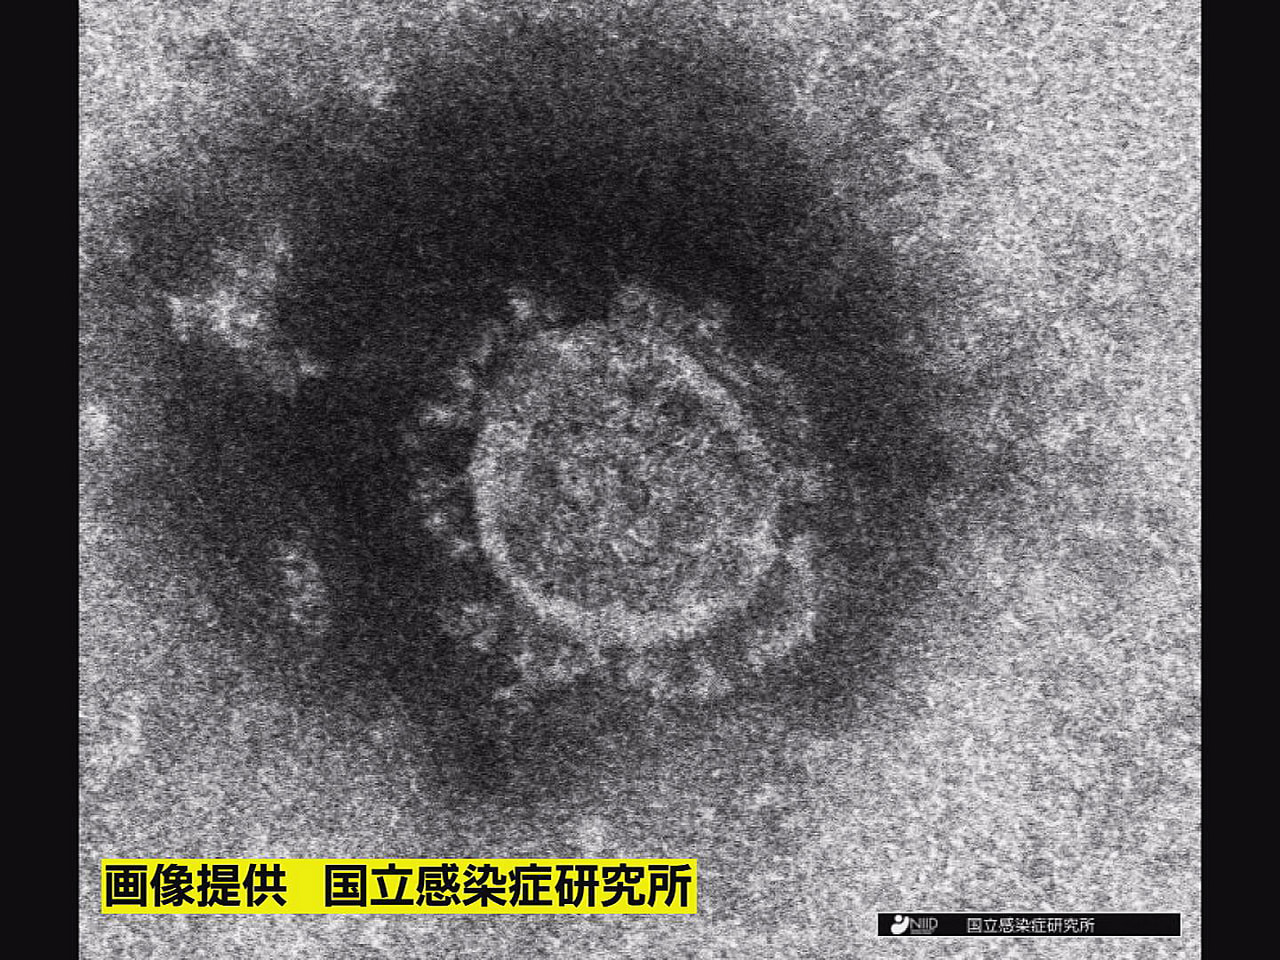 岐阜県は２４日、新型コロナウイルスの新規感染者が３６４人確認されたと発表しました...